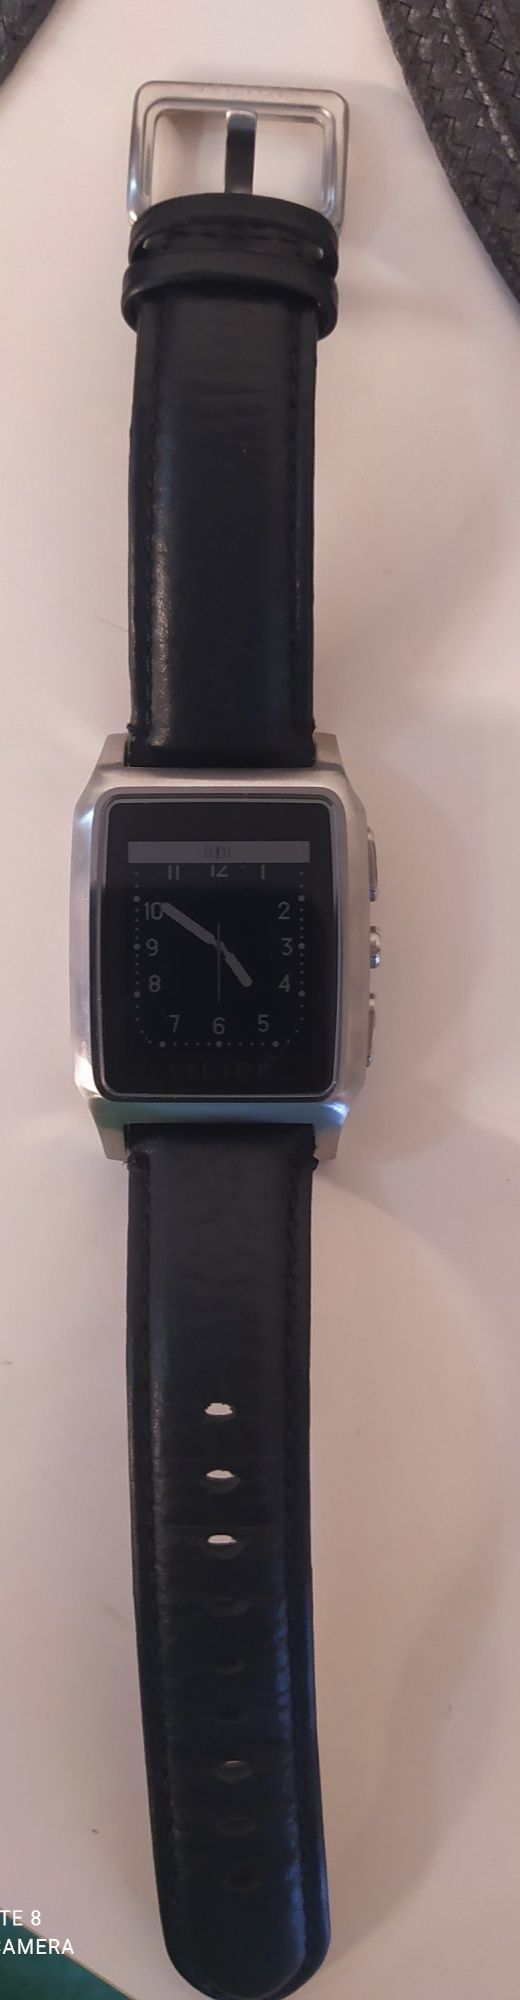 Smartwatch Vector  Meridian